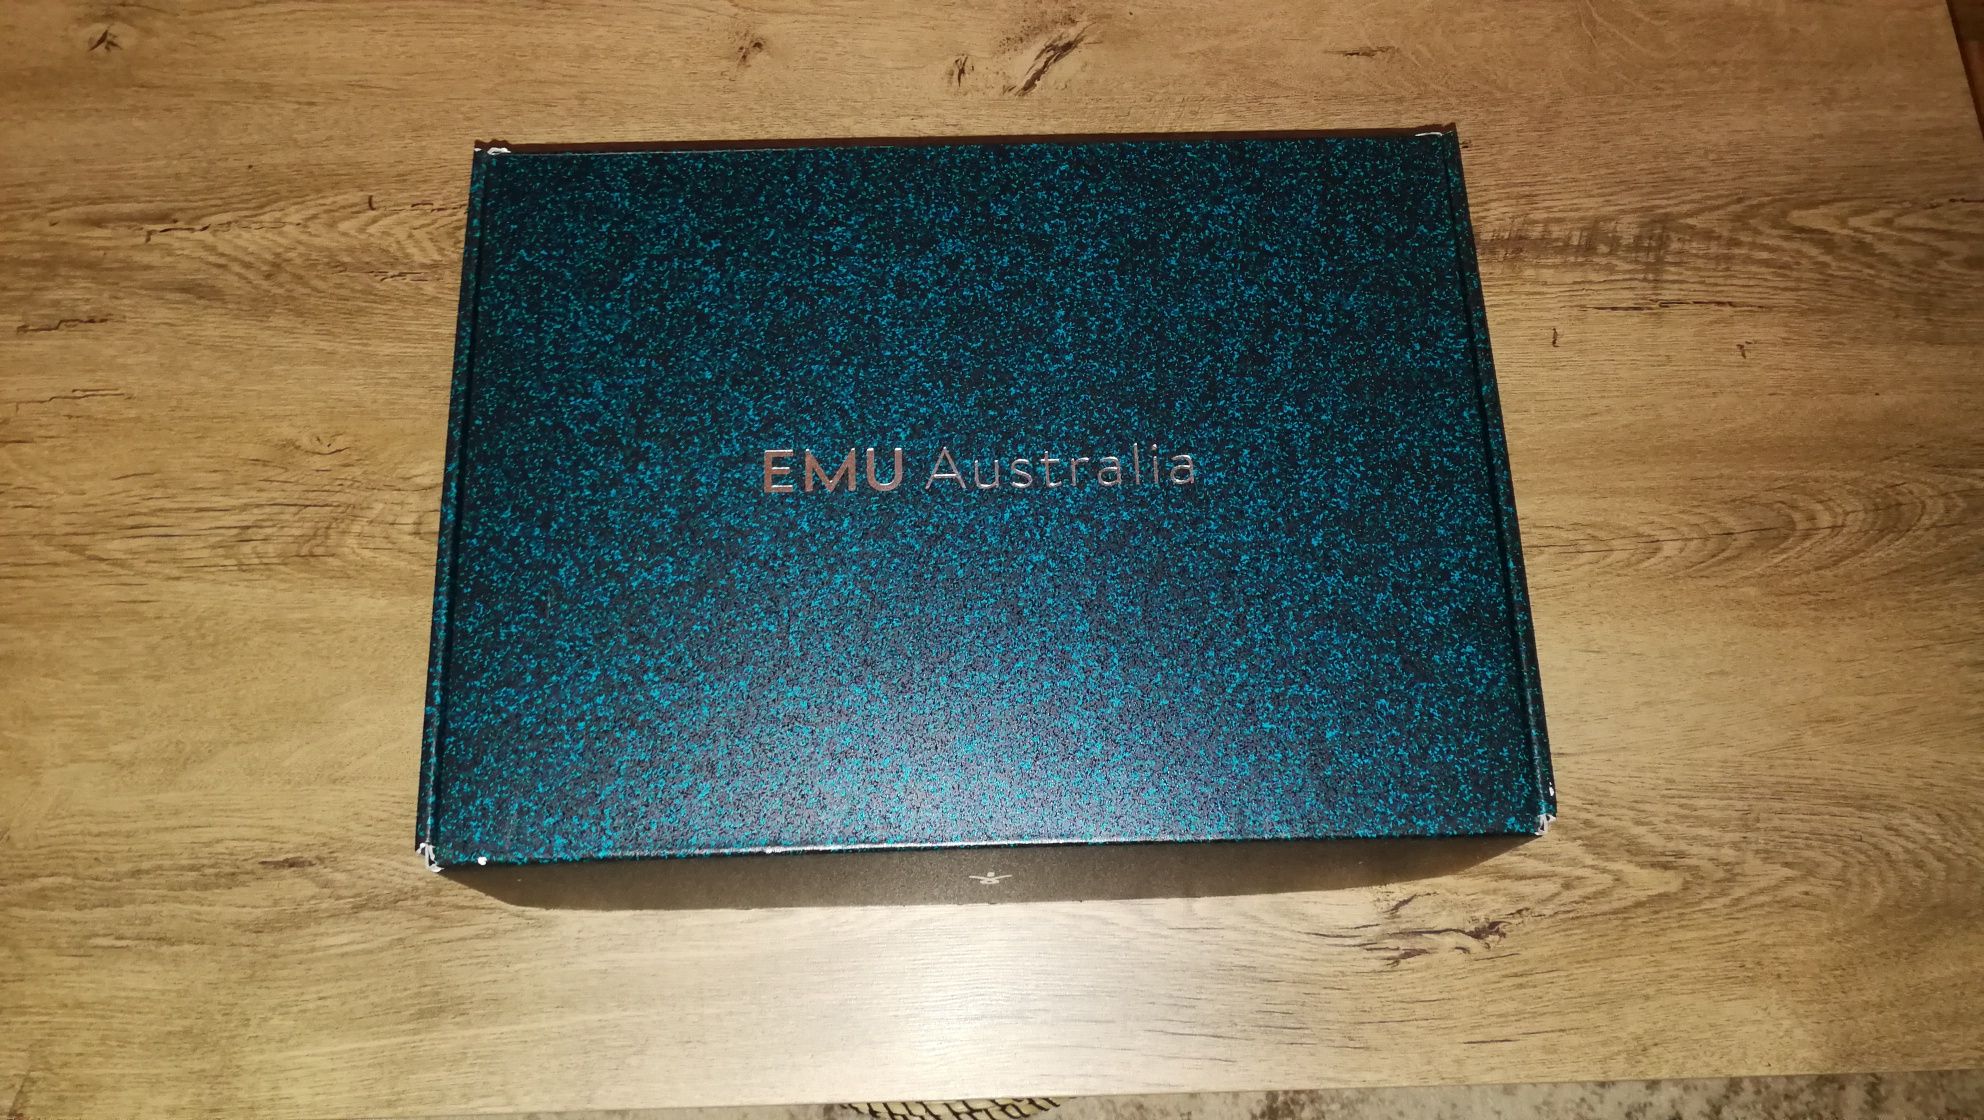 Buty Emu Australia Sandy Bay Hi rozmiar 38 jak nowe